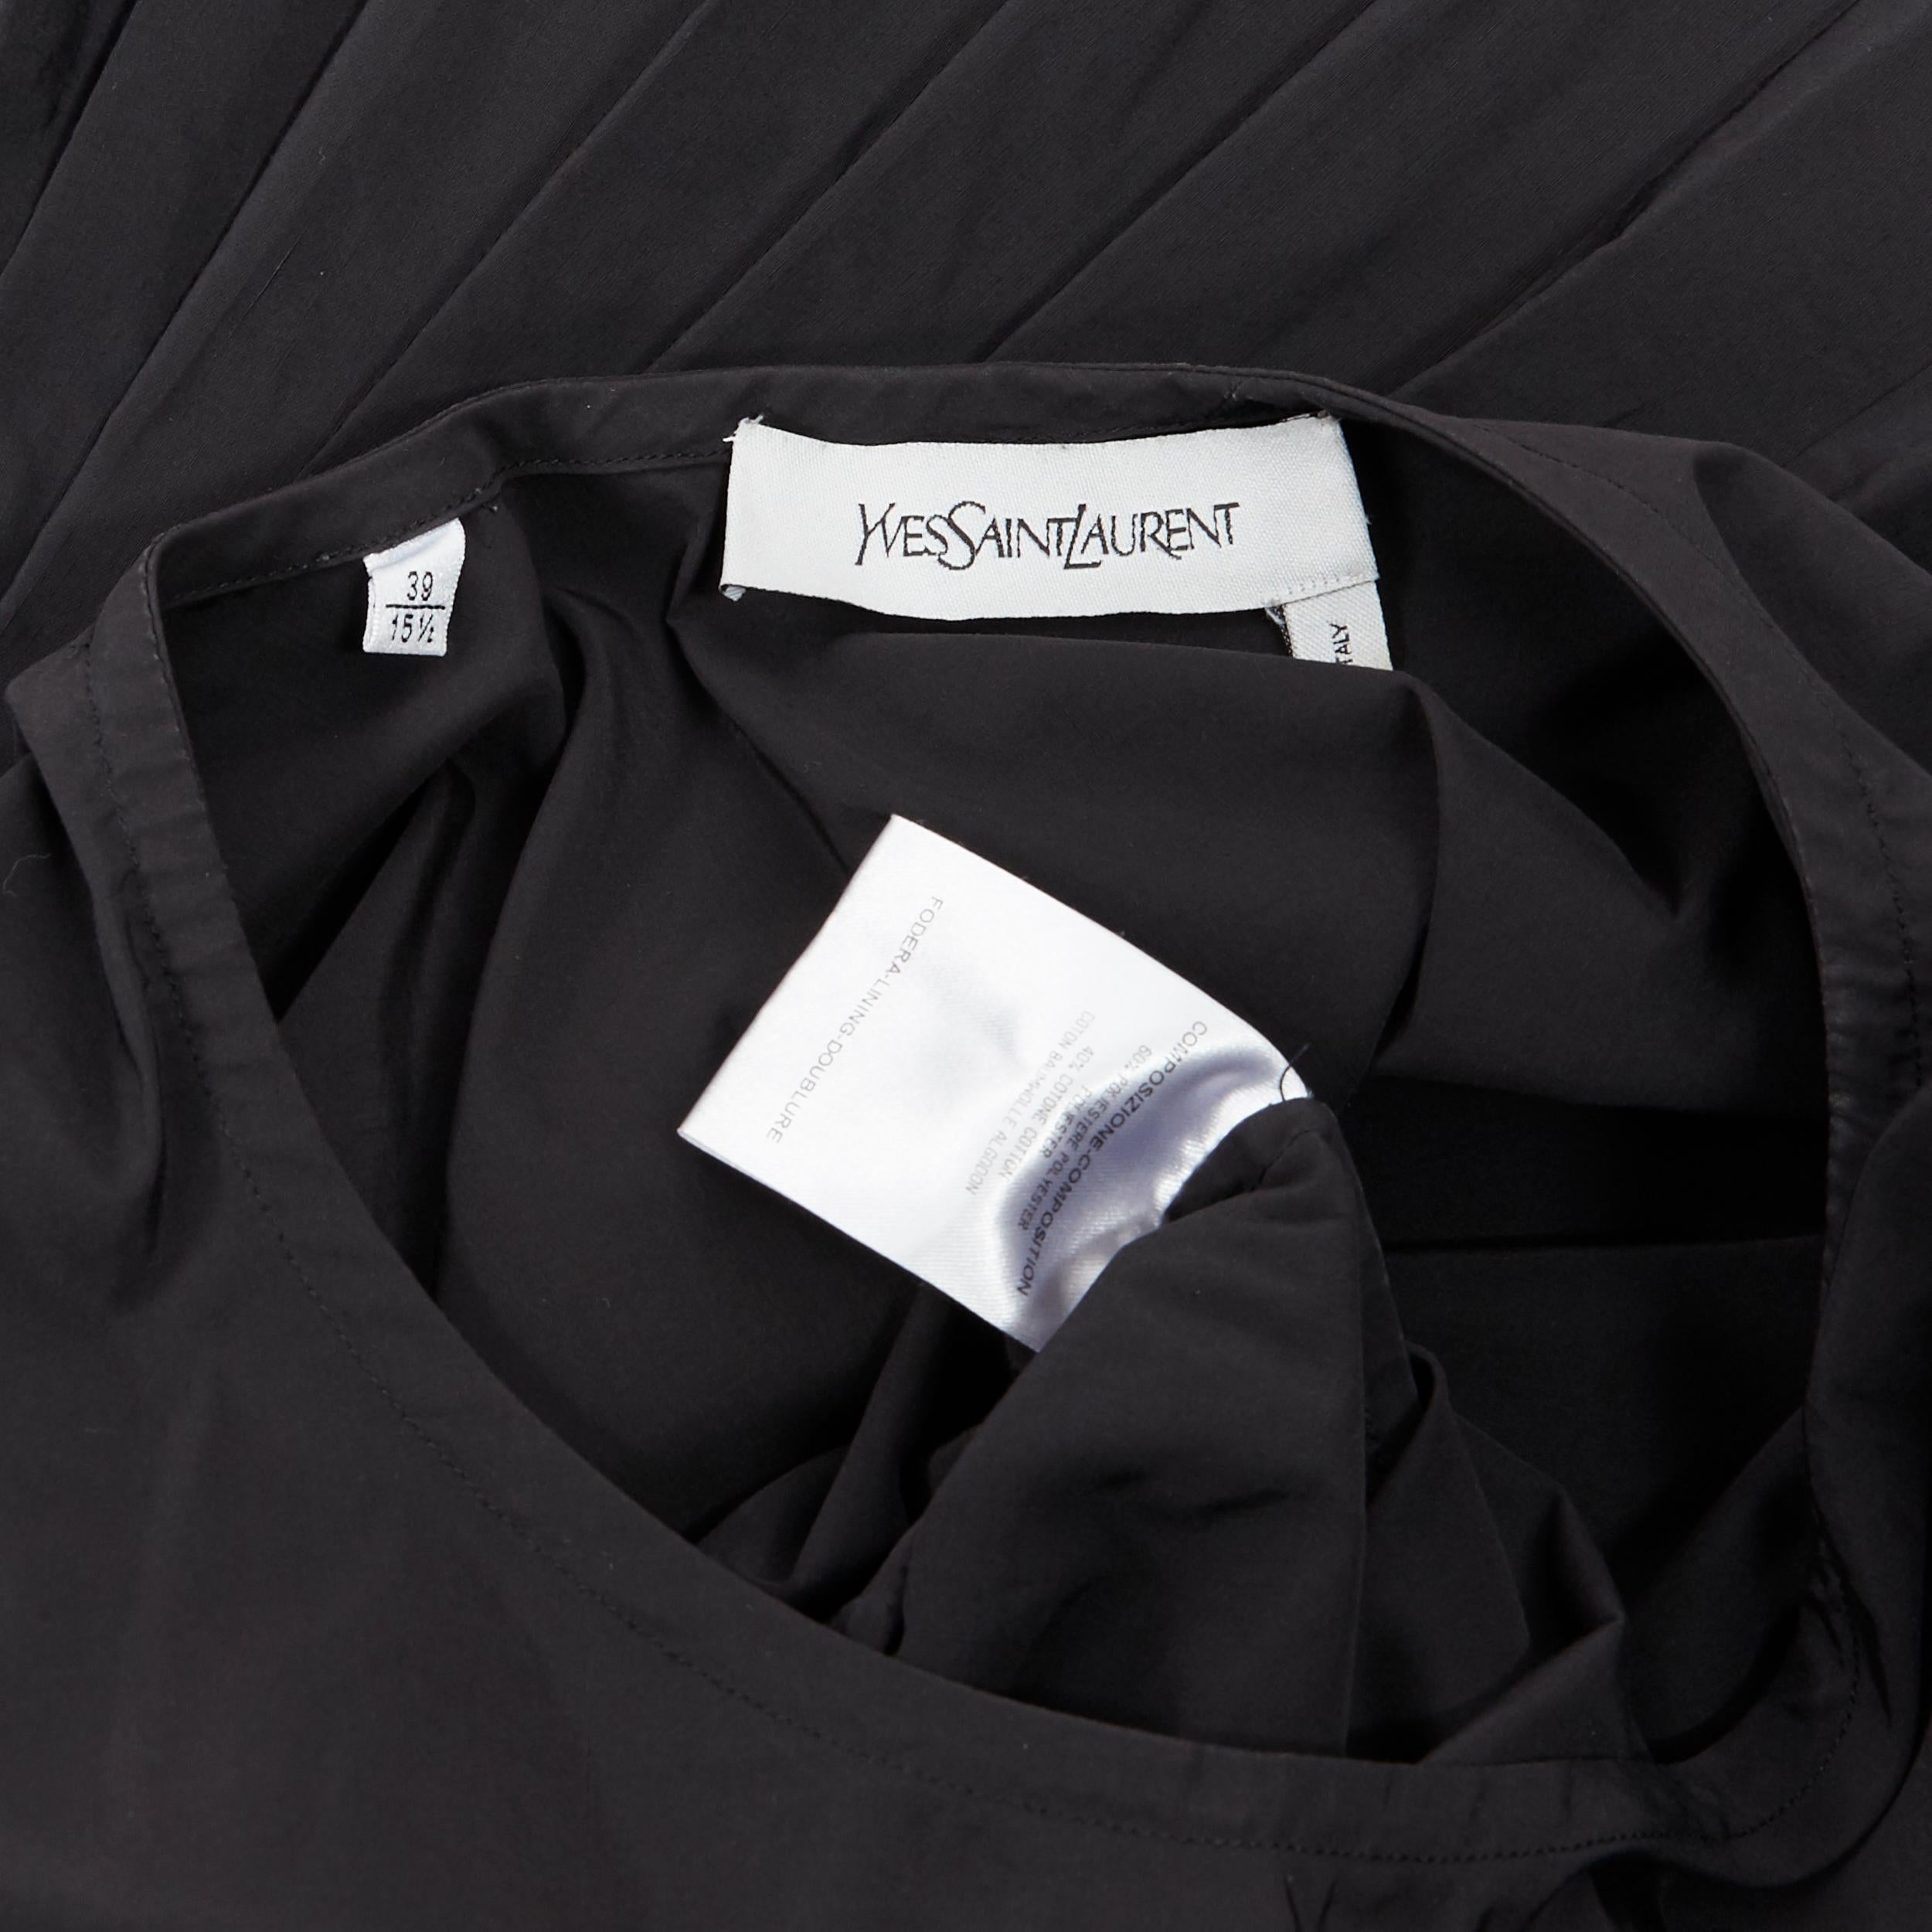 YVES SAINT LAURENT 2010 black pleated skirt side slit tunic dress EU39 / 15.5 6